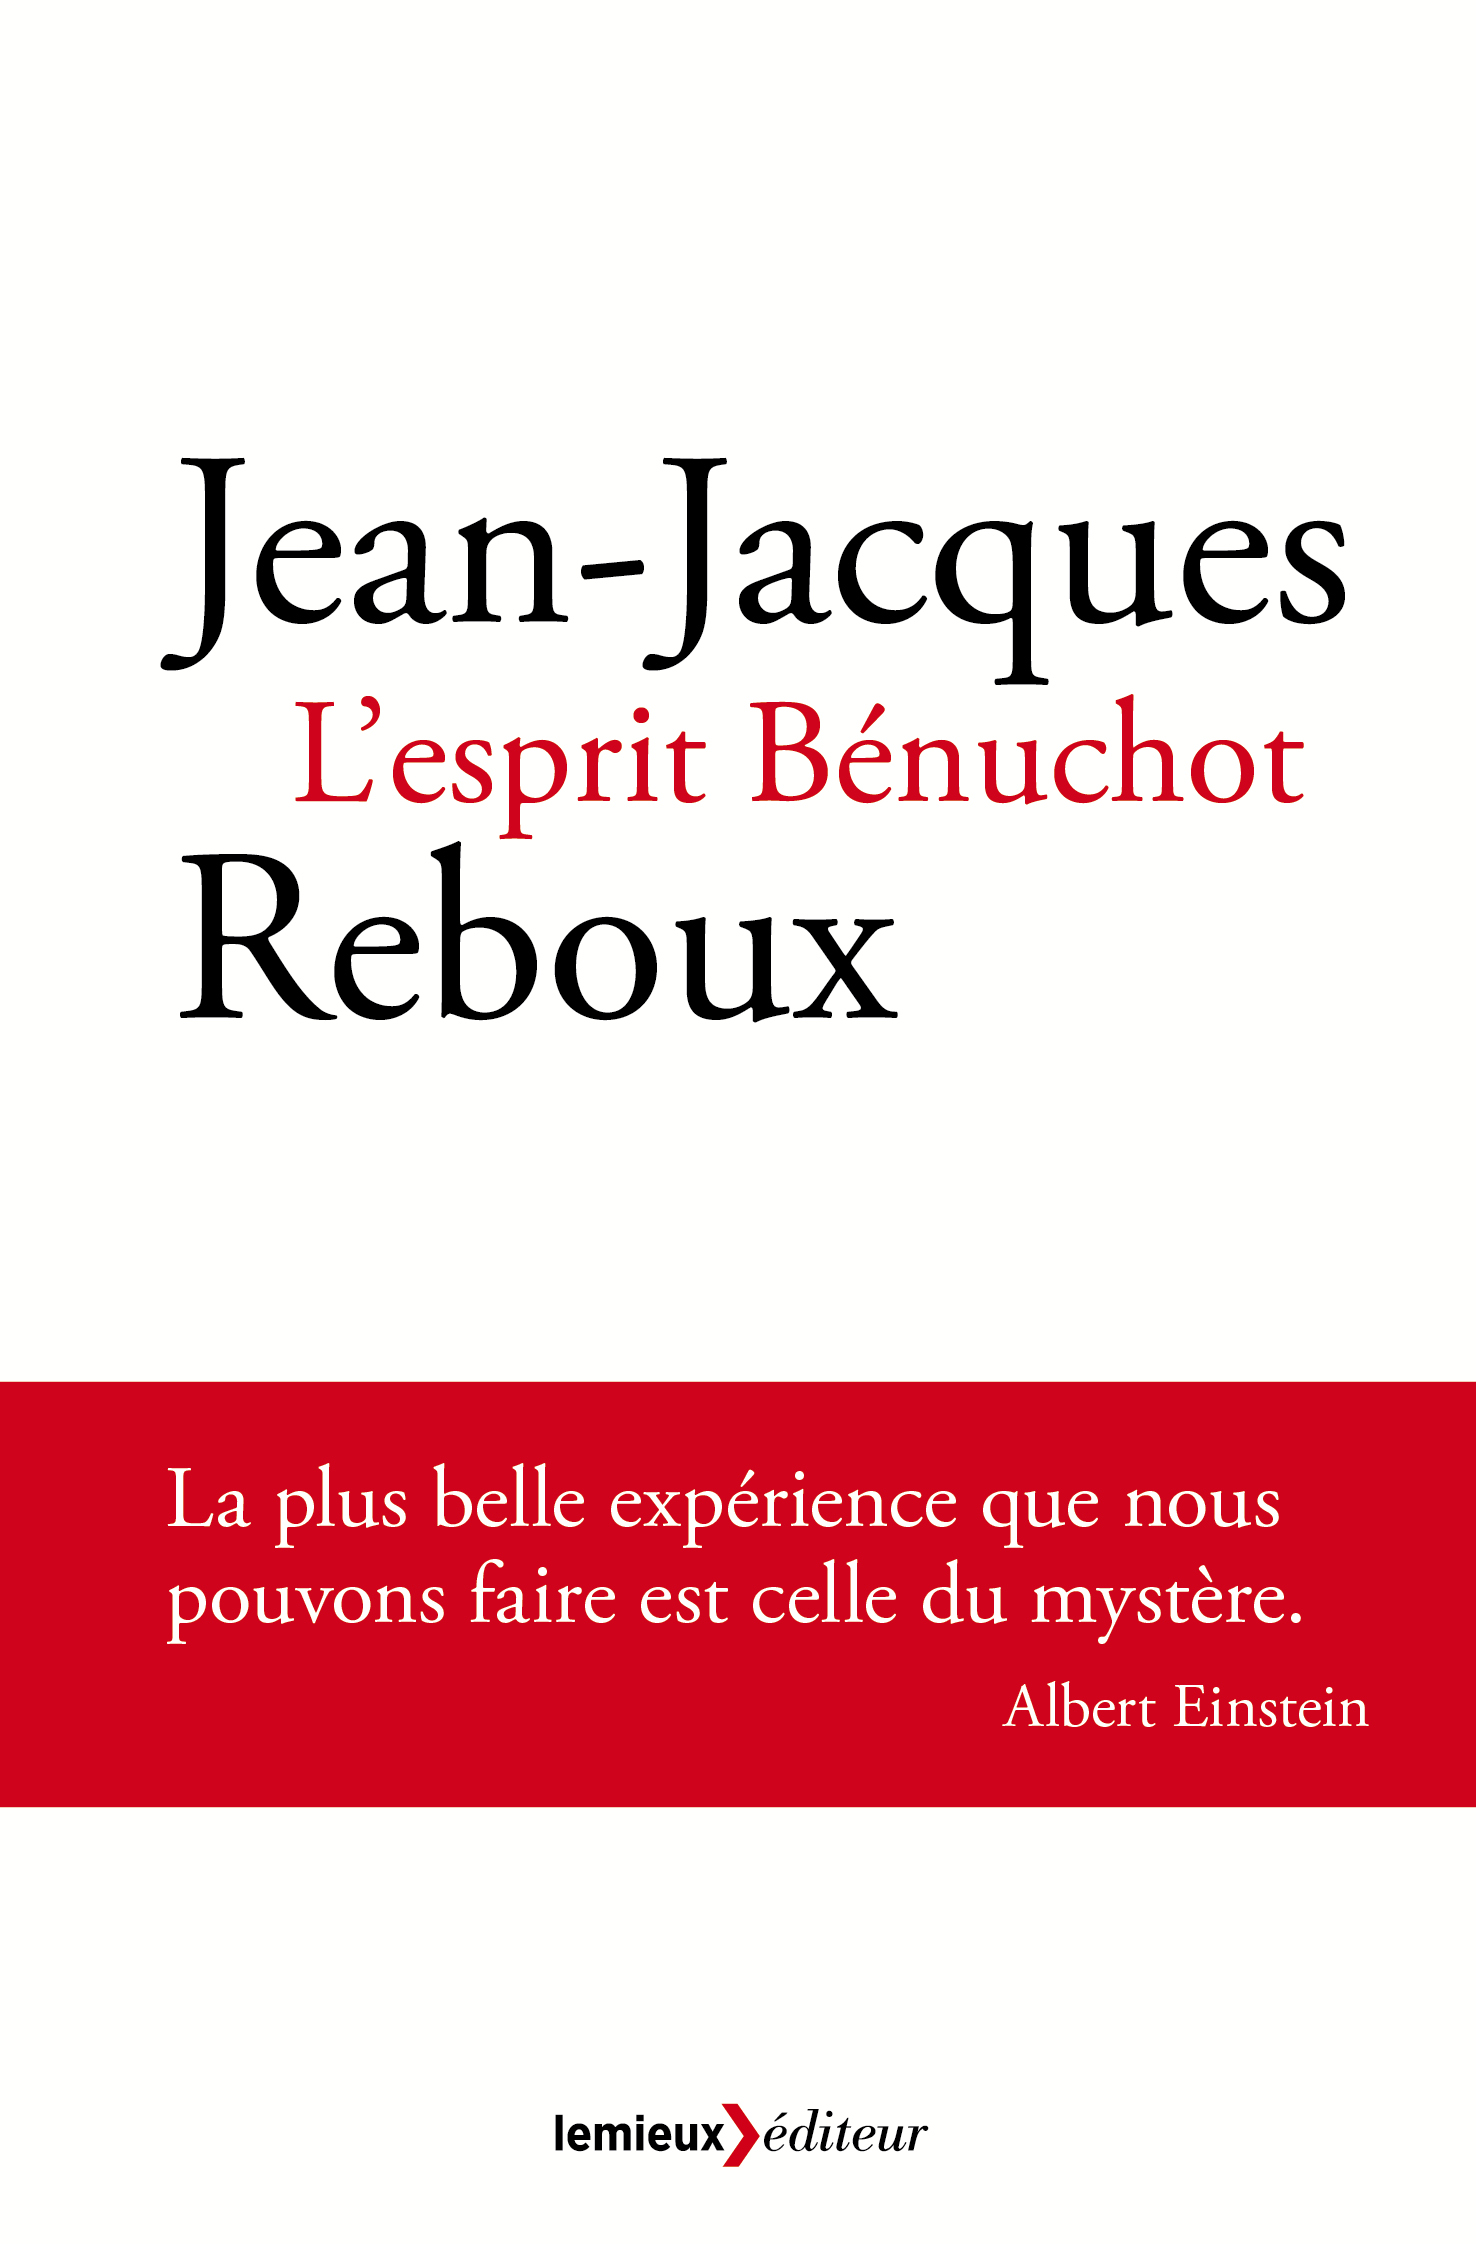 Jean Jacques Reboux L'esprit Bénuchot